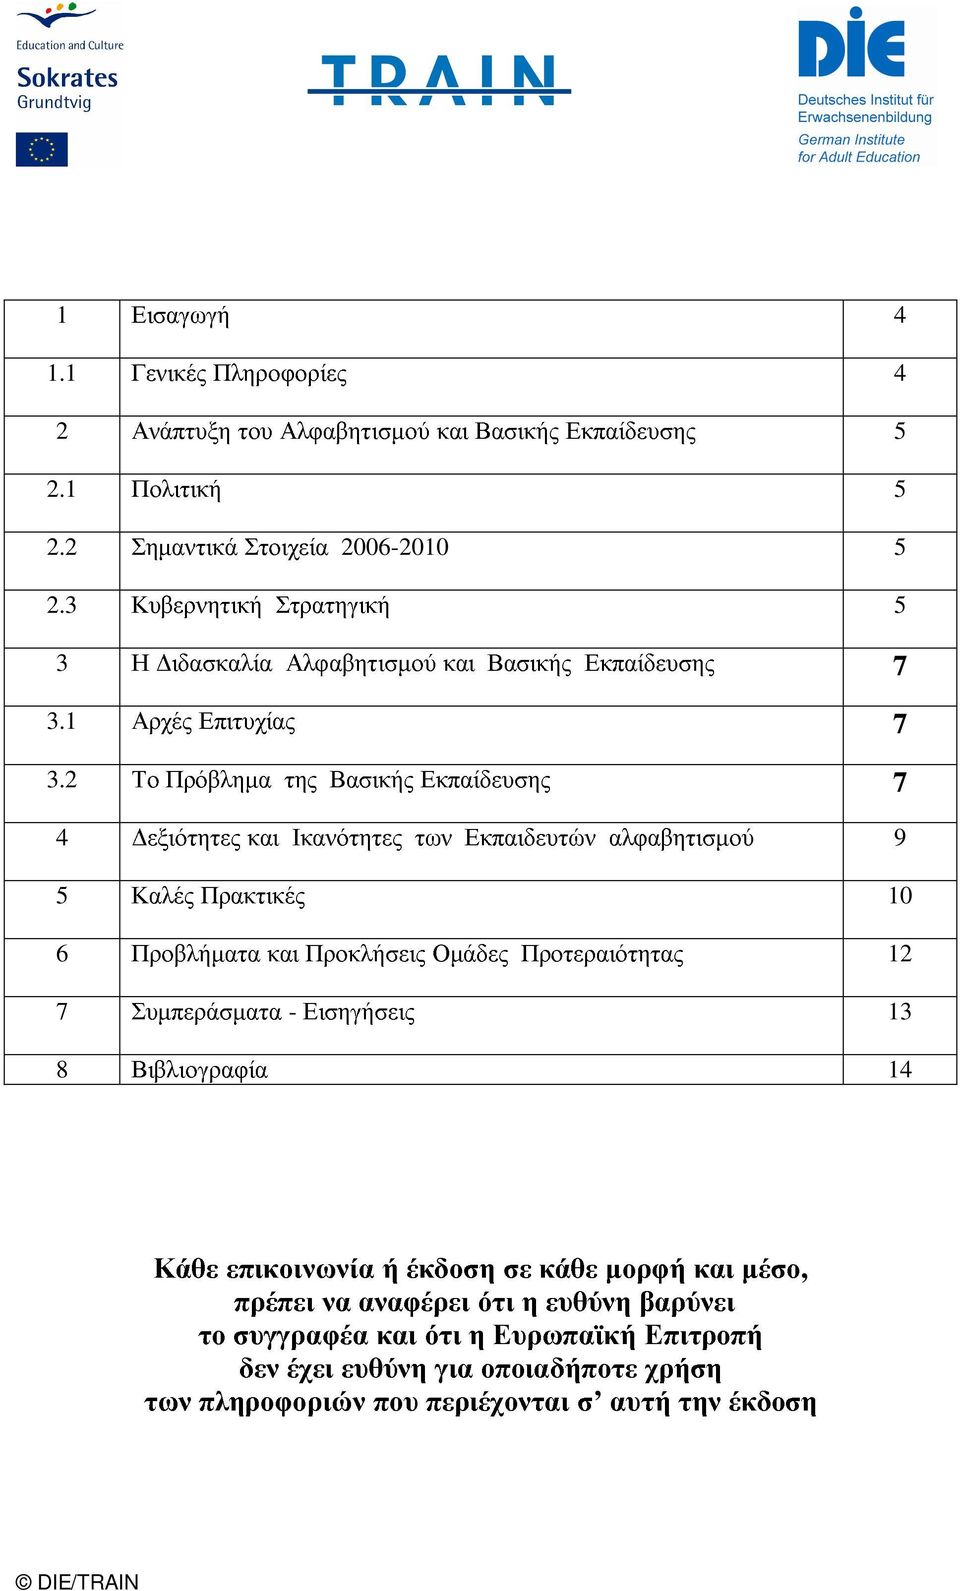 2006-2010 5 και της Ικανότητες Βασικής Εκπαίδευσης 5 Εισηγήσεις Προκλήσεις των Οµάδες Εκπαιδευτών Προτεραιότητας αλφαβητισµού 7 7 7 9 10 12-13 των Κάθε το πληροφοριών